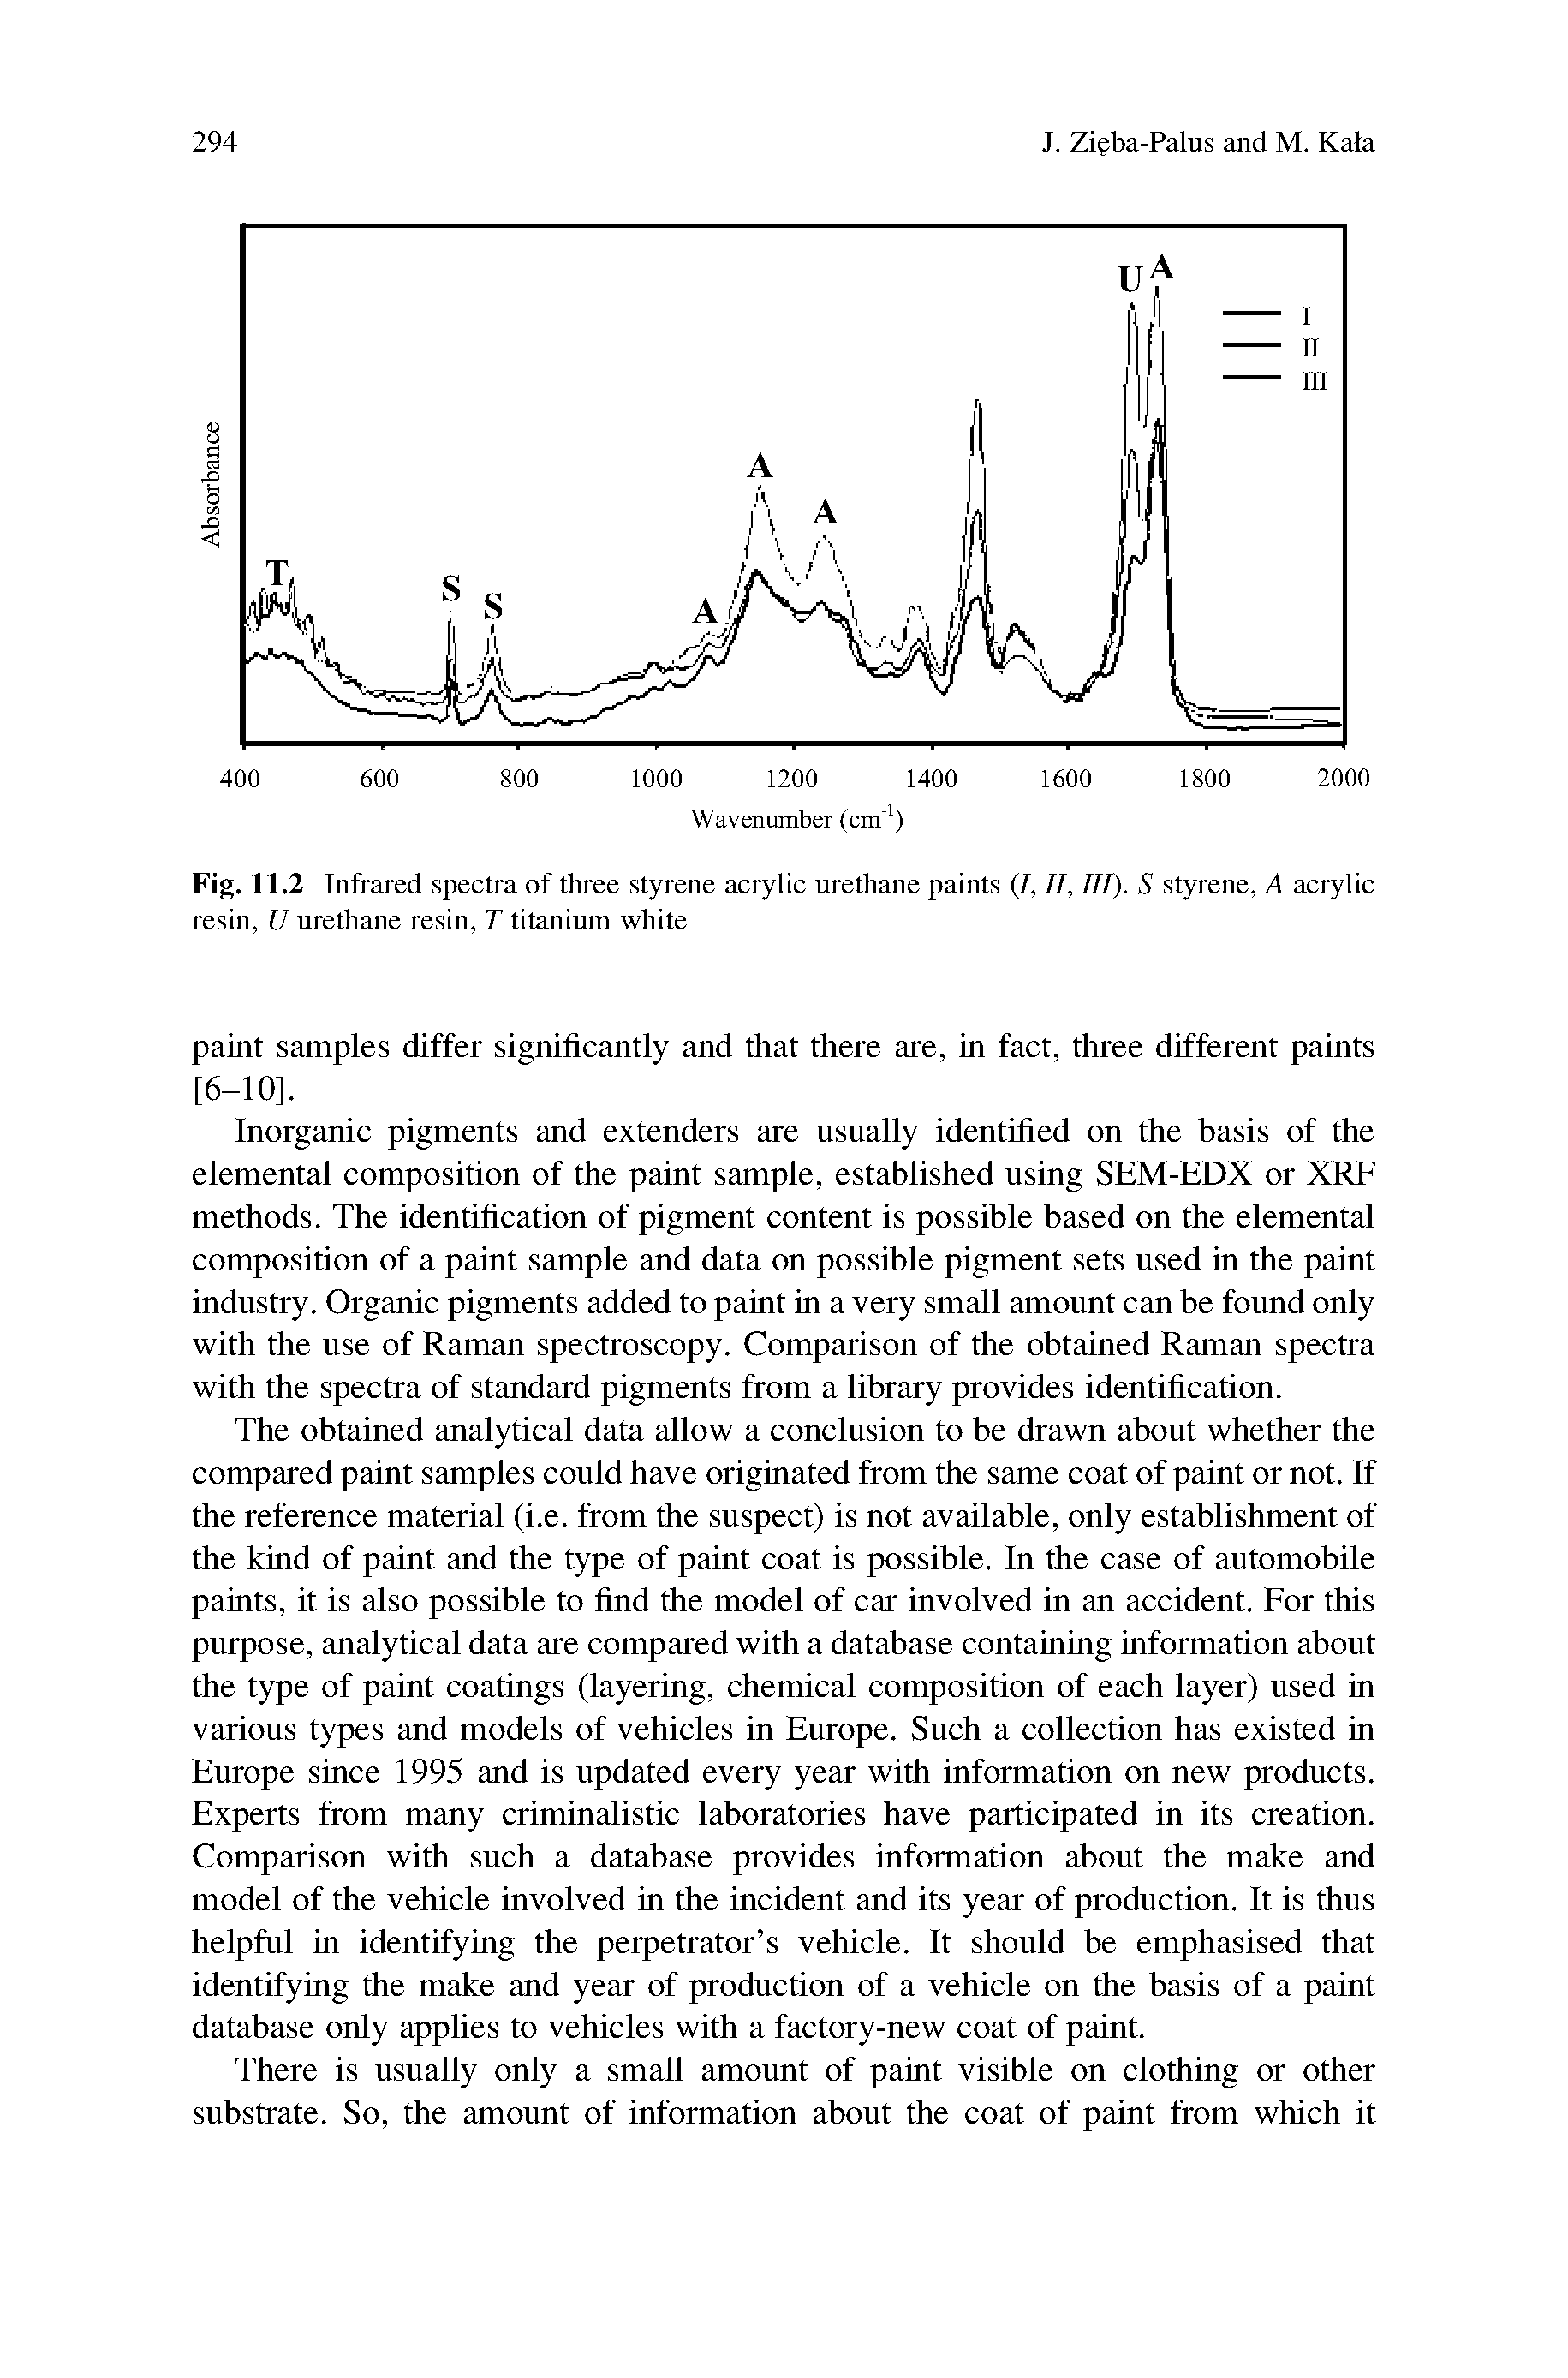 Fig. 11.2 Infrared spectra of three styrene acrylic urethane paints (/, II, III). S styrene, A acrylic resin, U urethane resin, T titanium white...